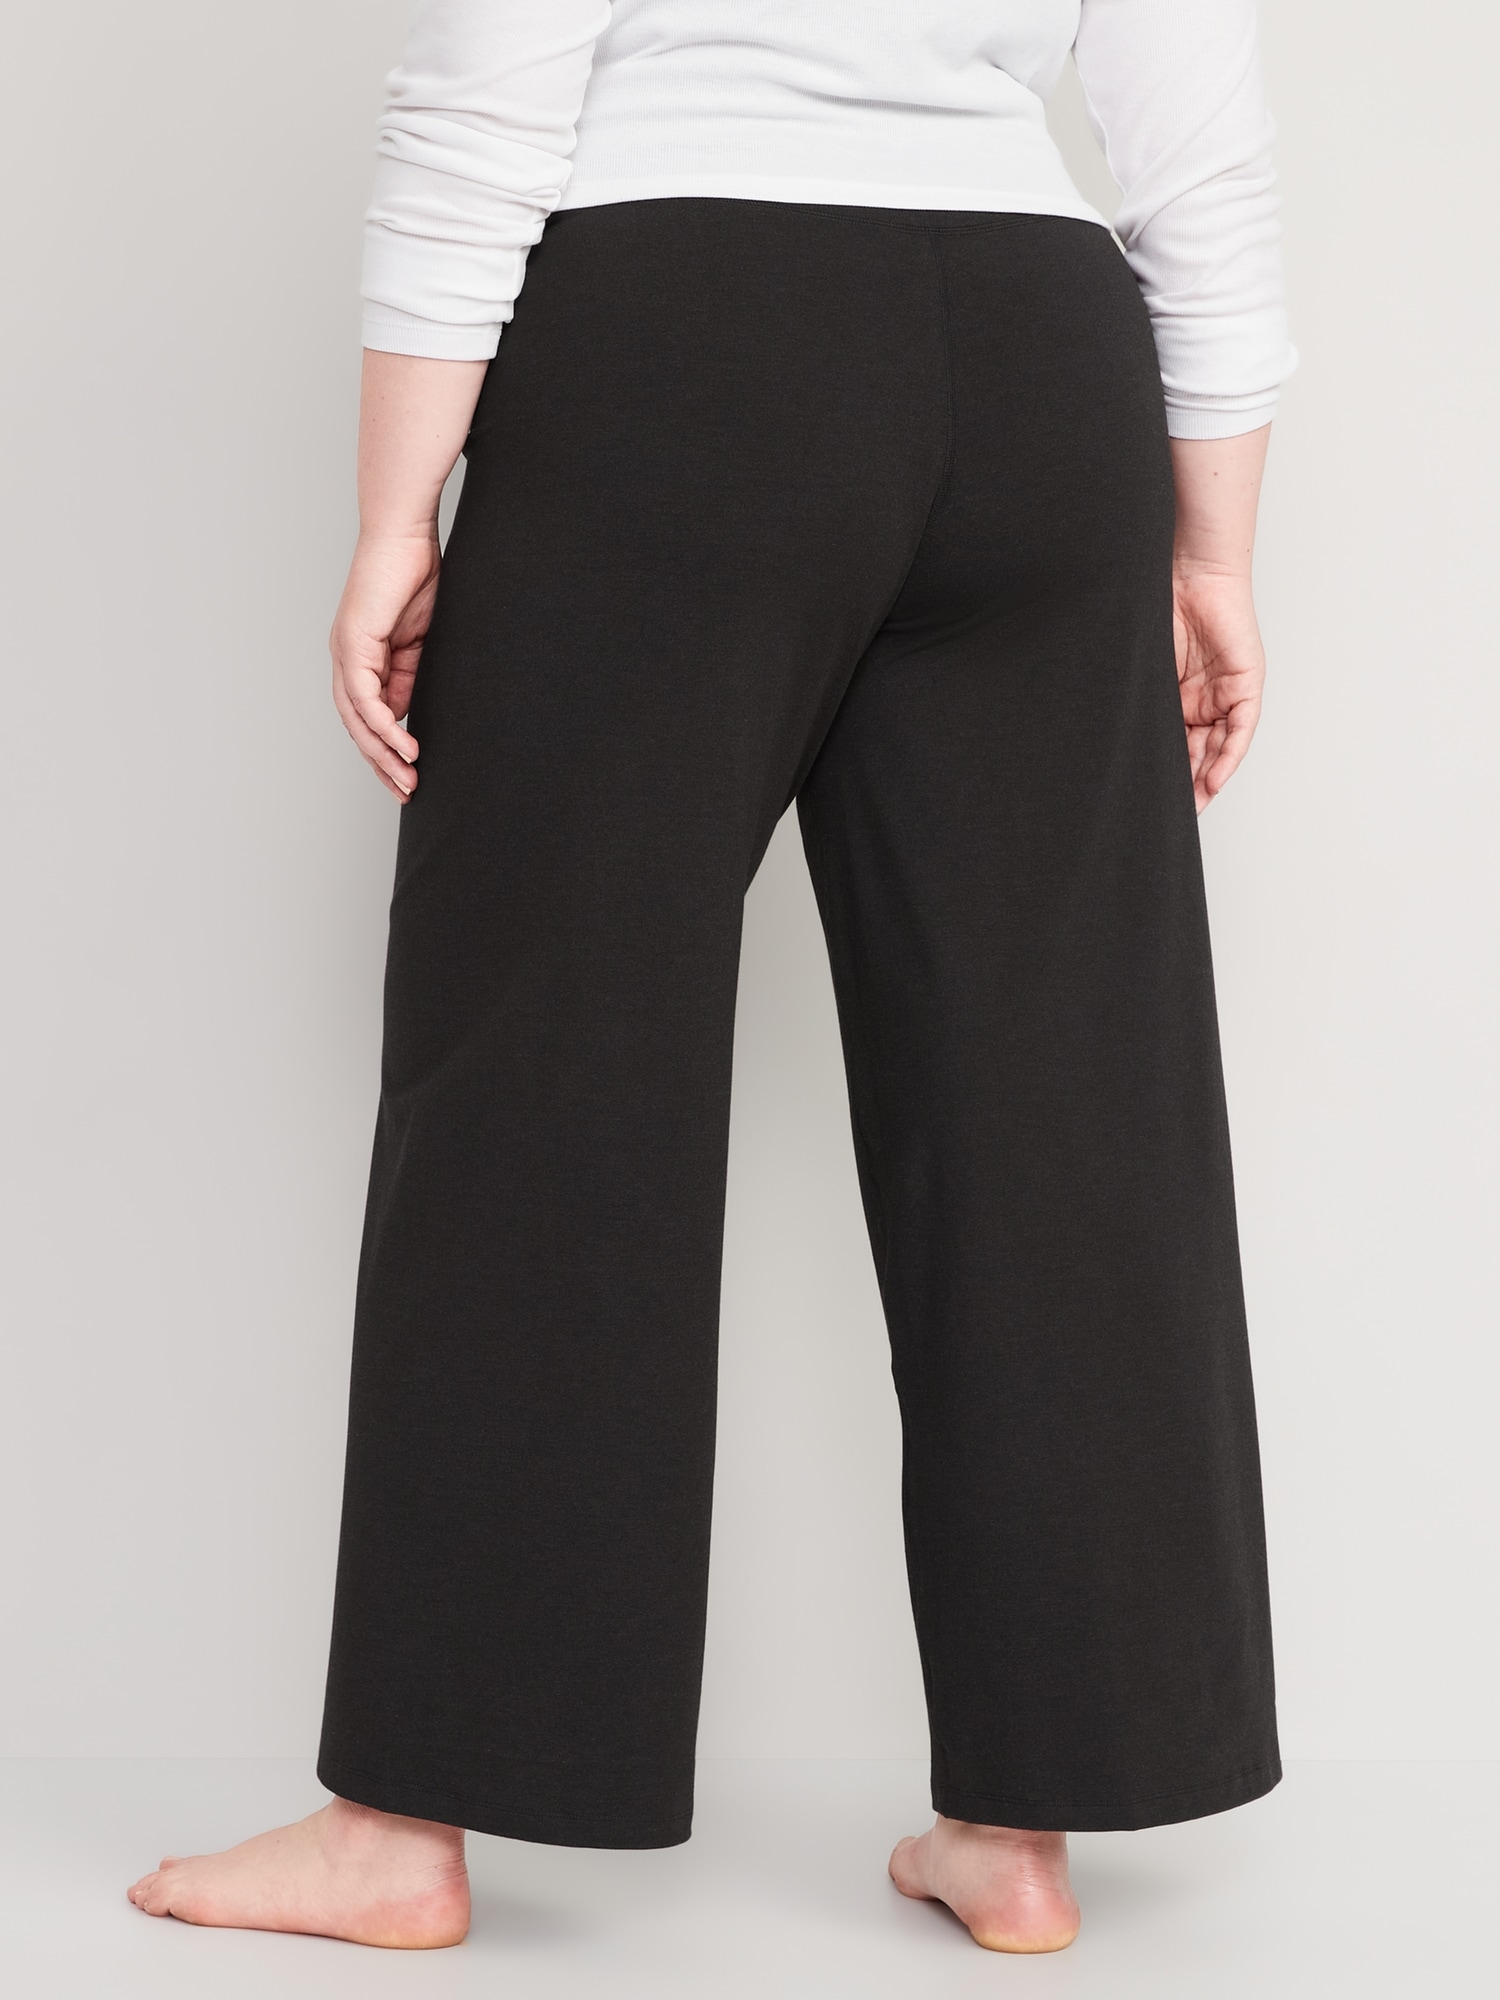 Women's Pants + Active Pants, Size 8-26